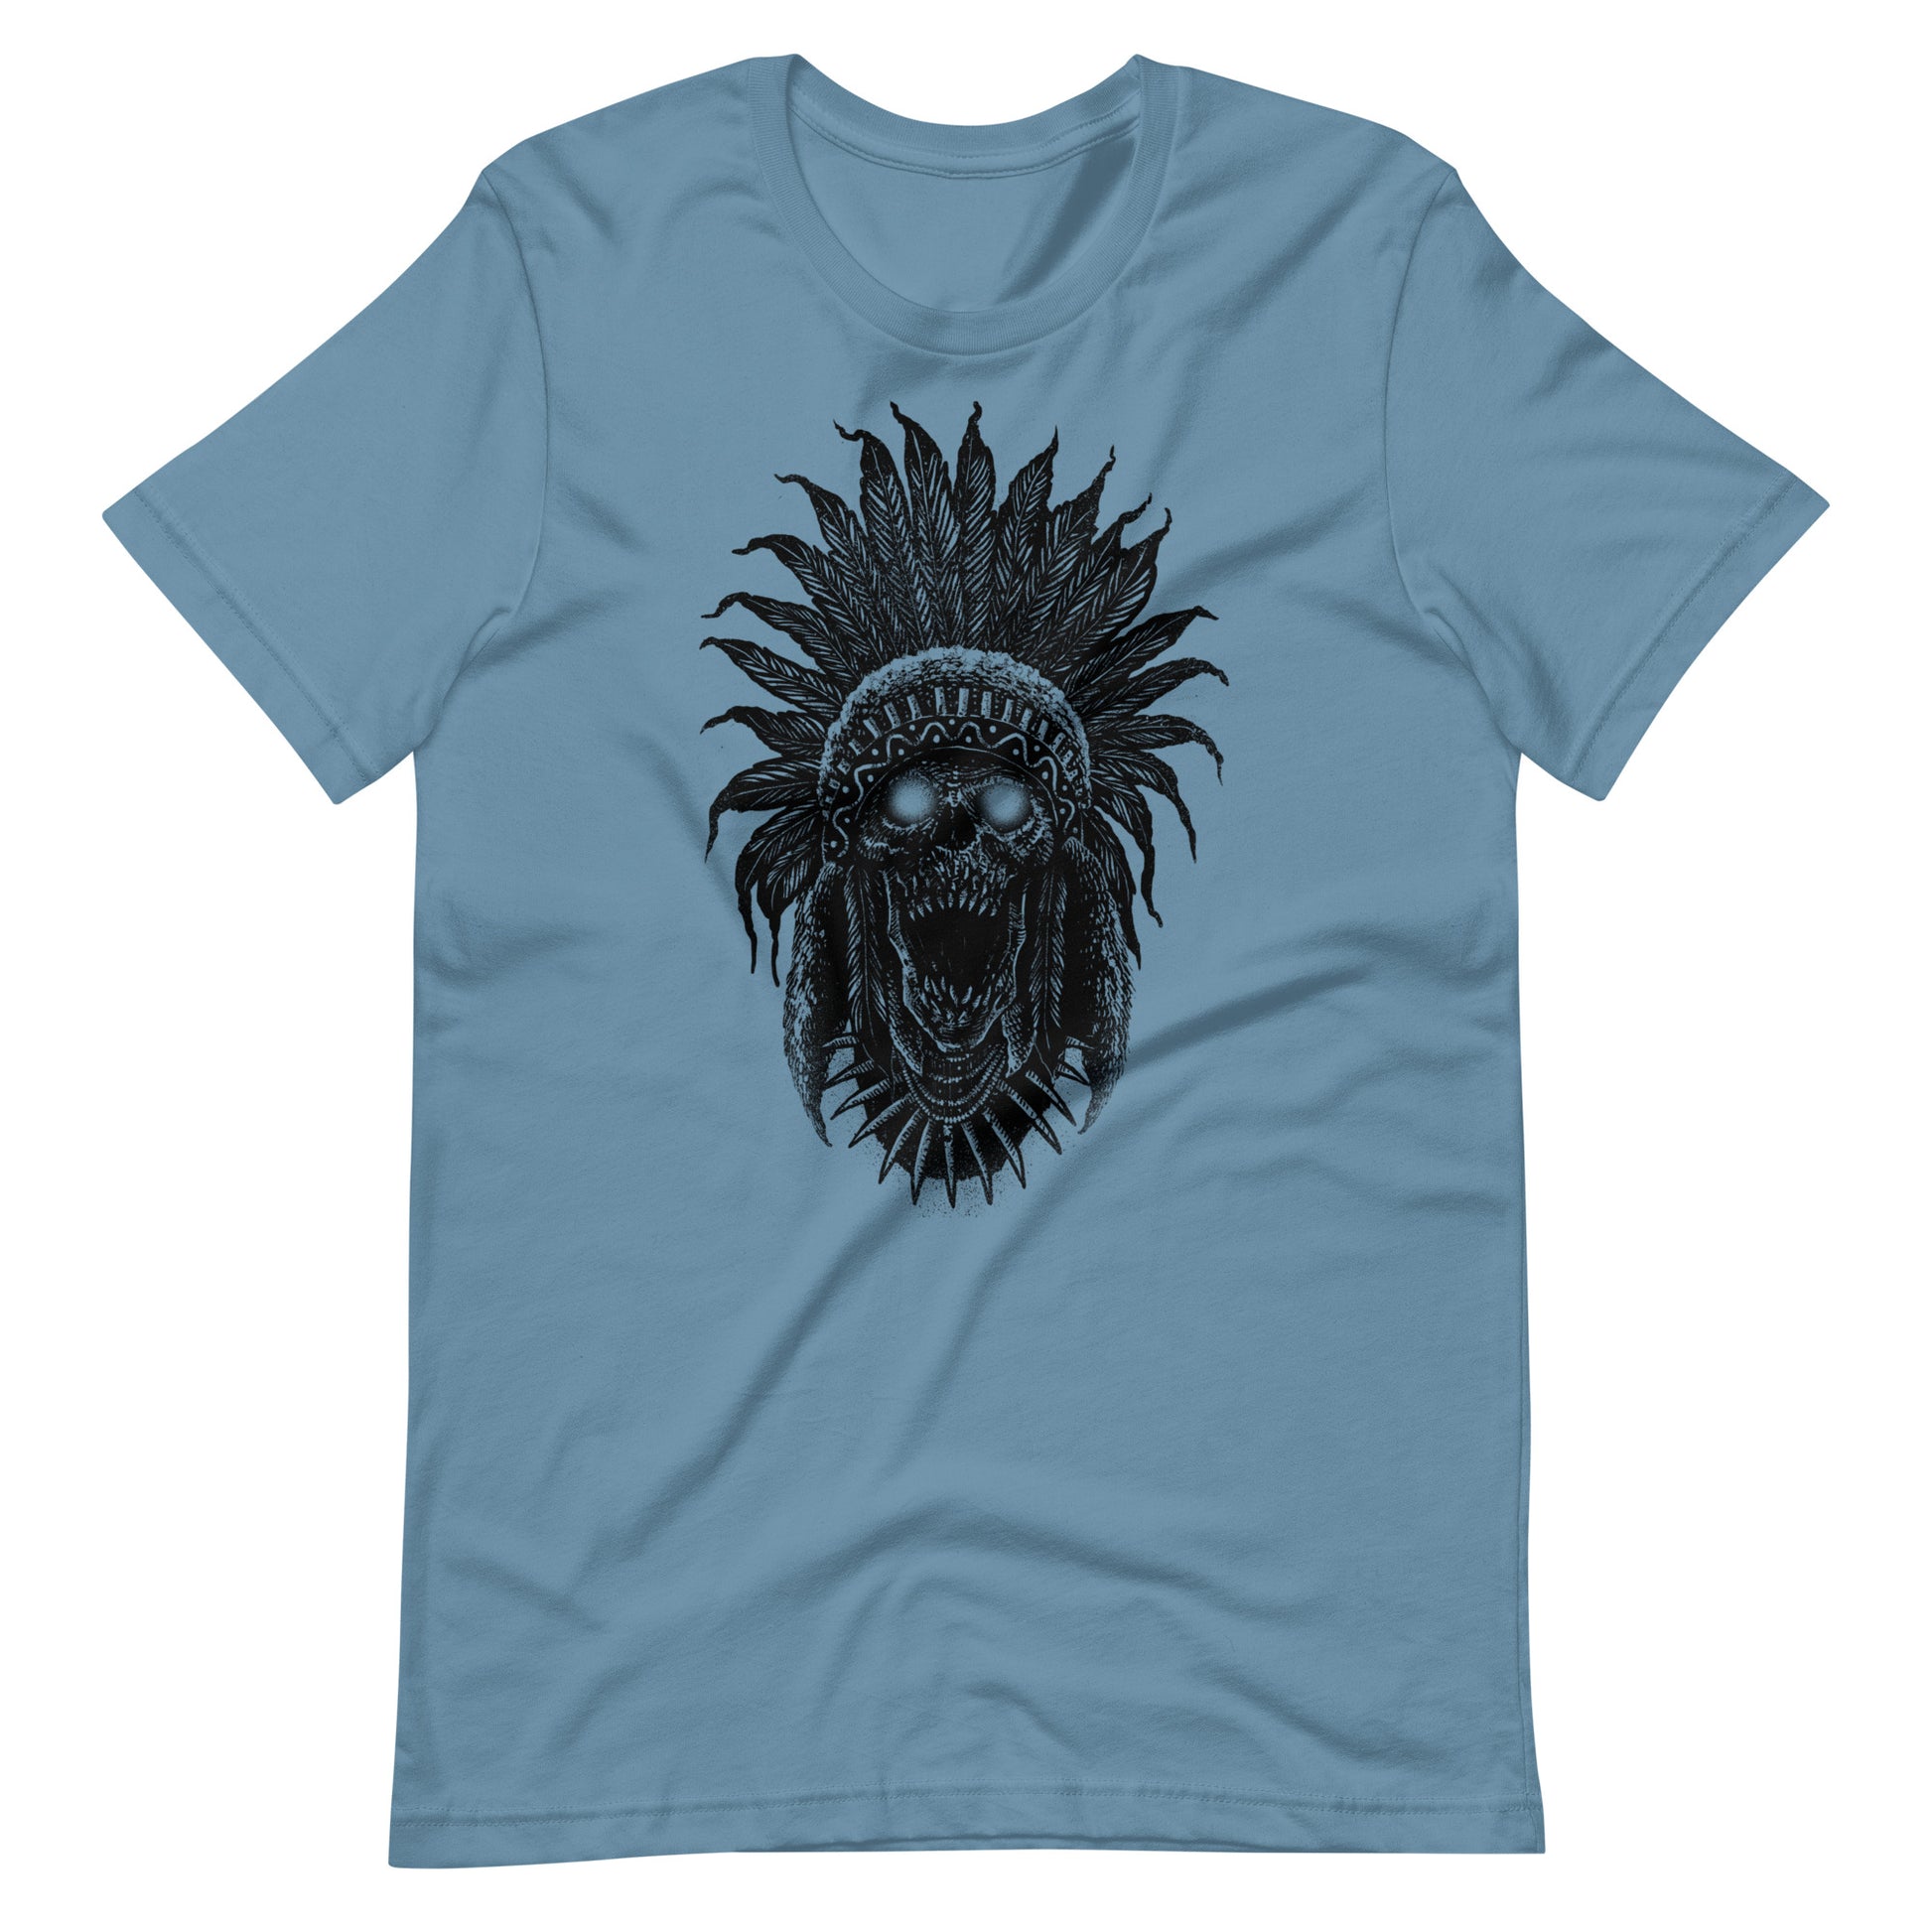 Tribe Skull Black - Men's t-shirt - Steel Blue Front